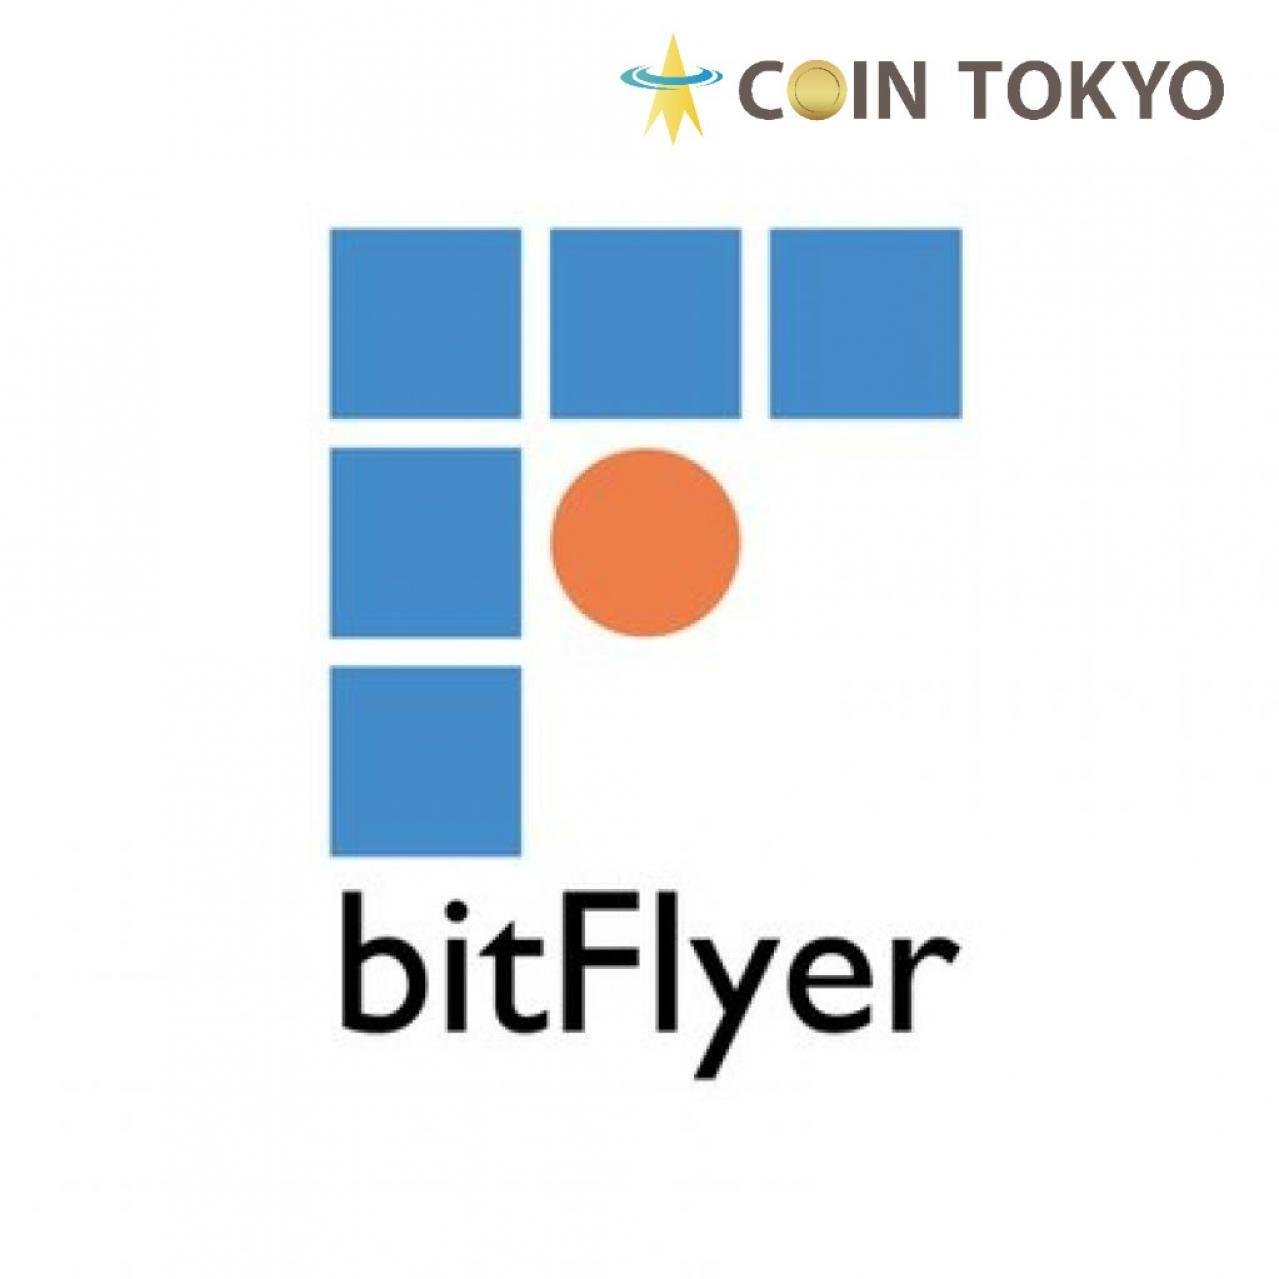 交易所bitFlyer授予相当于比特币SV虚拟货币新闻网站Coin Tokyo的日元